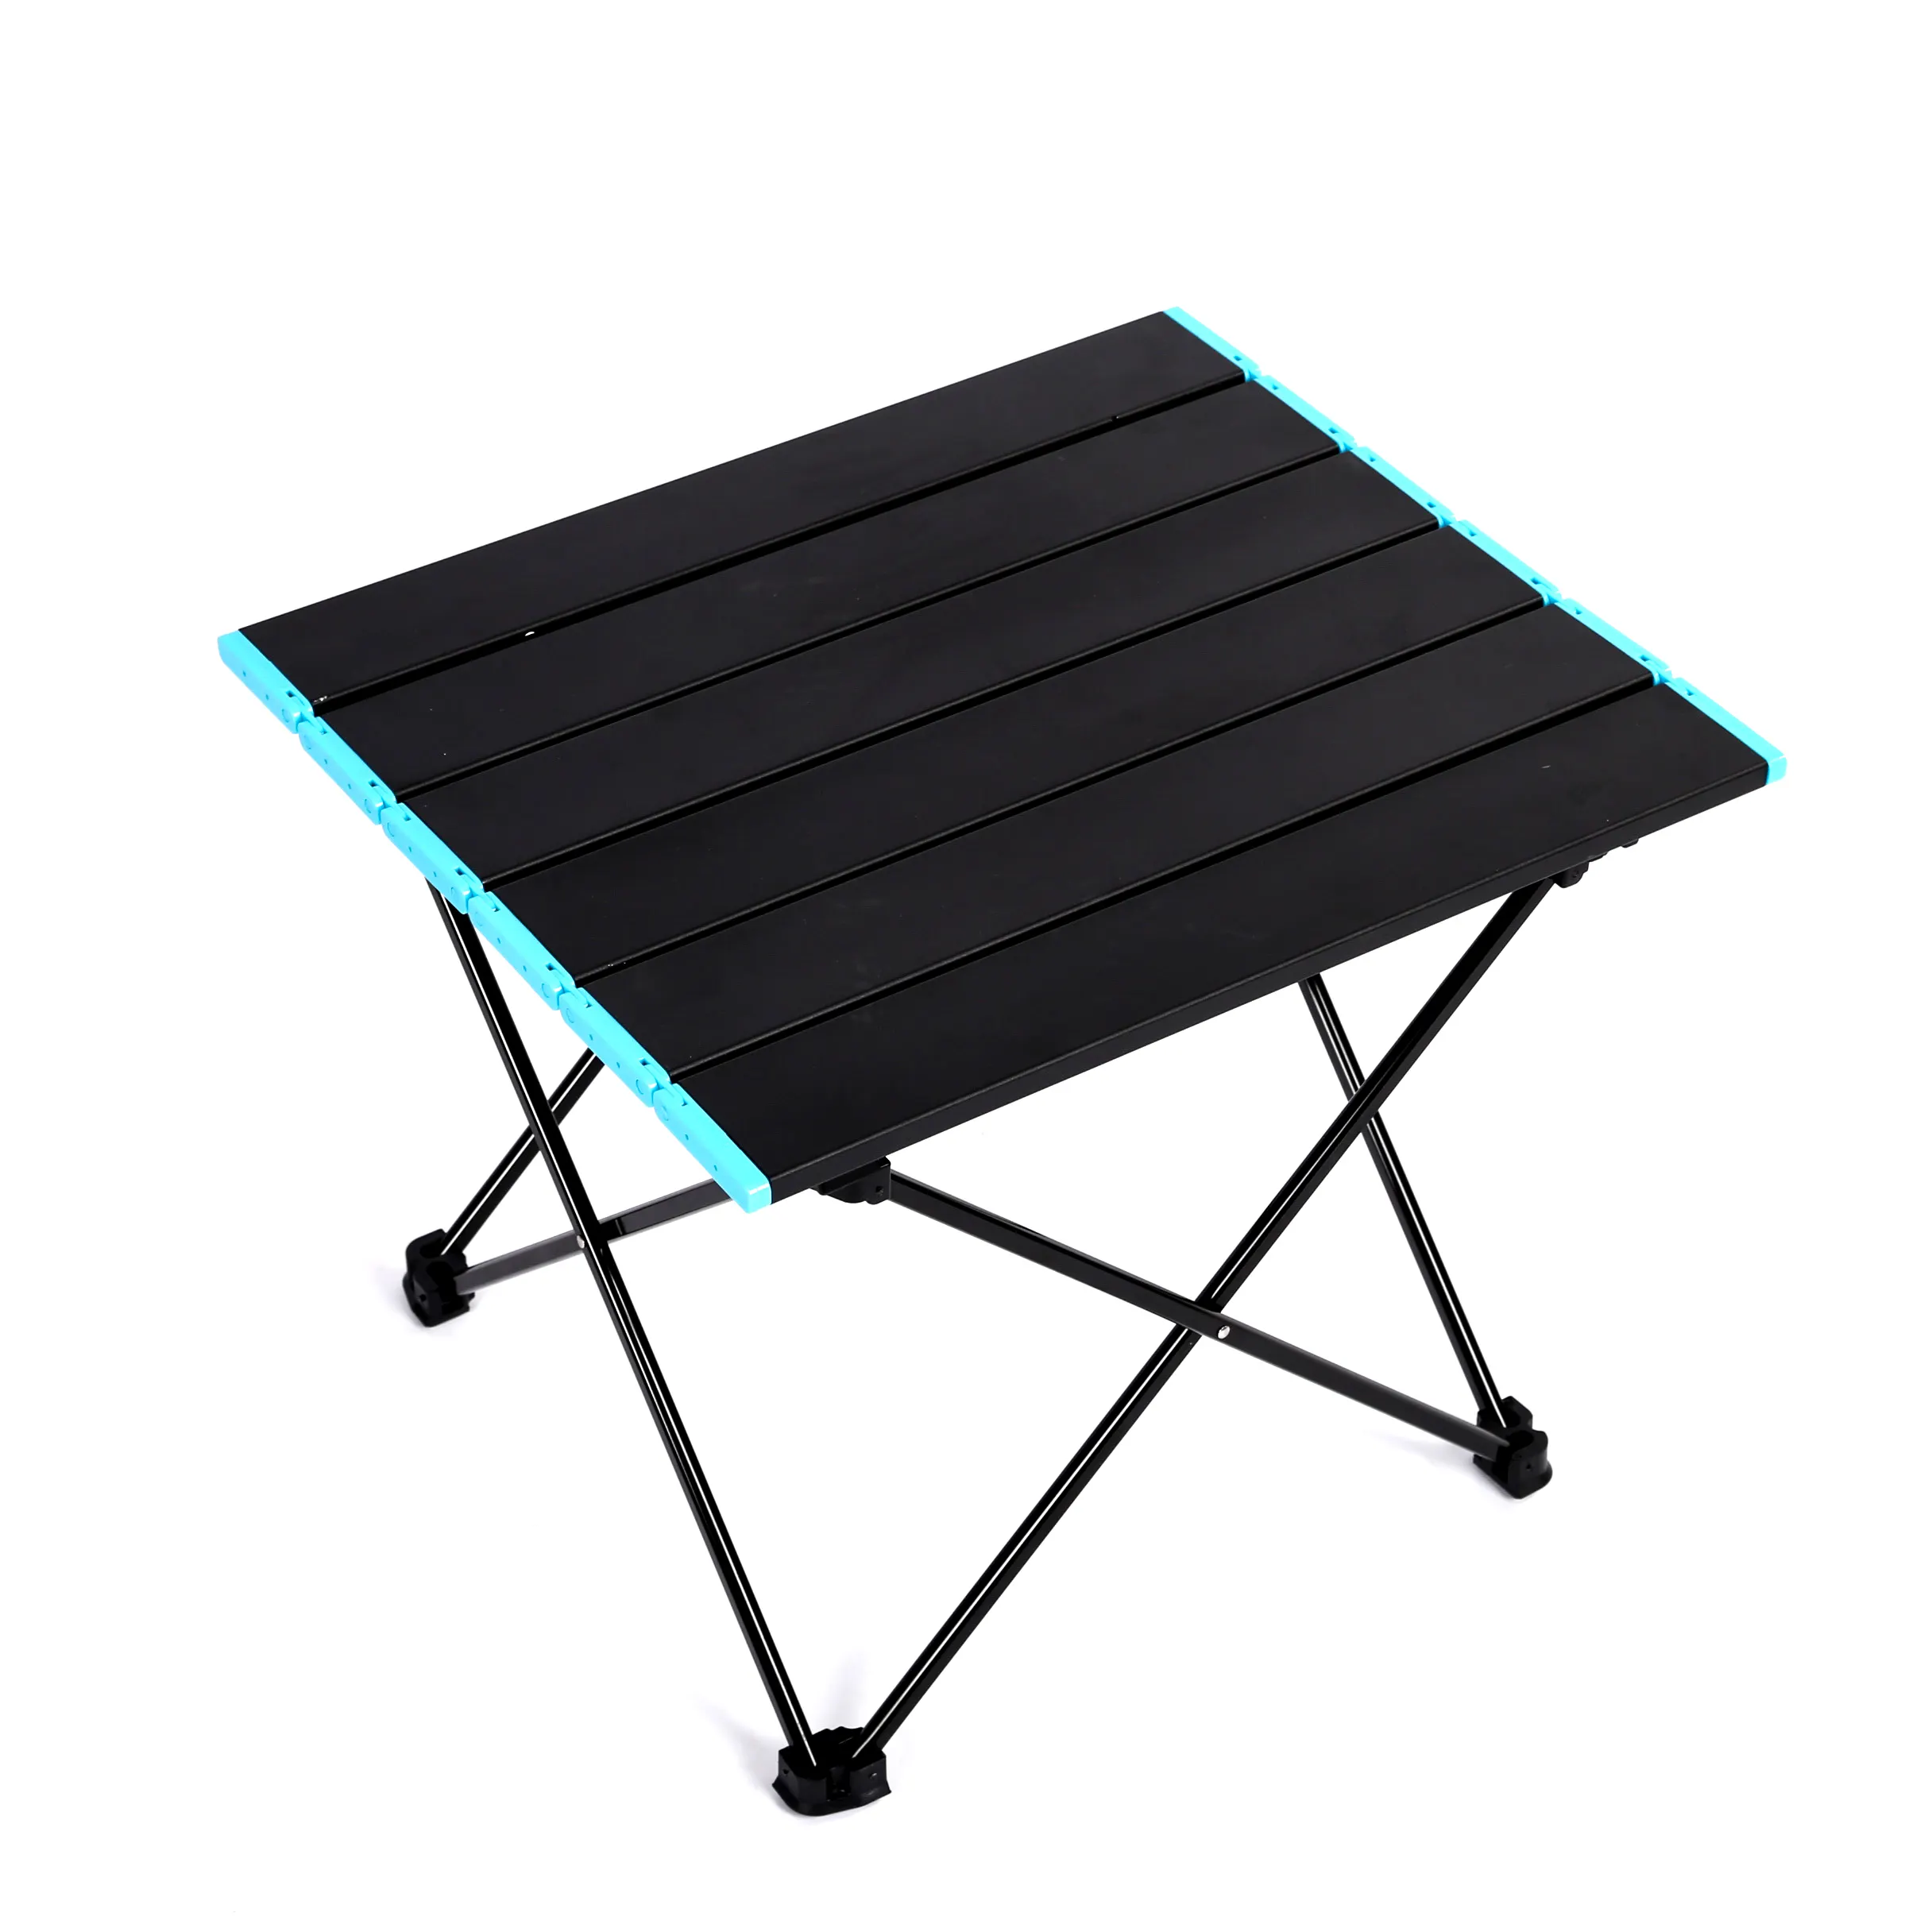 Table de Camping Portable pliable en aluminium, pour pique-nique barbecue plein air, livraison gratuite, OEM